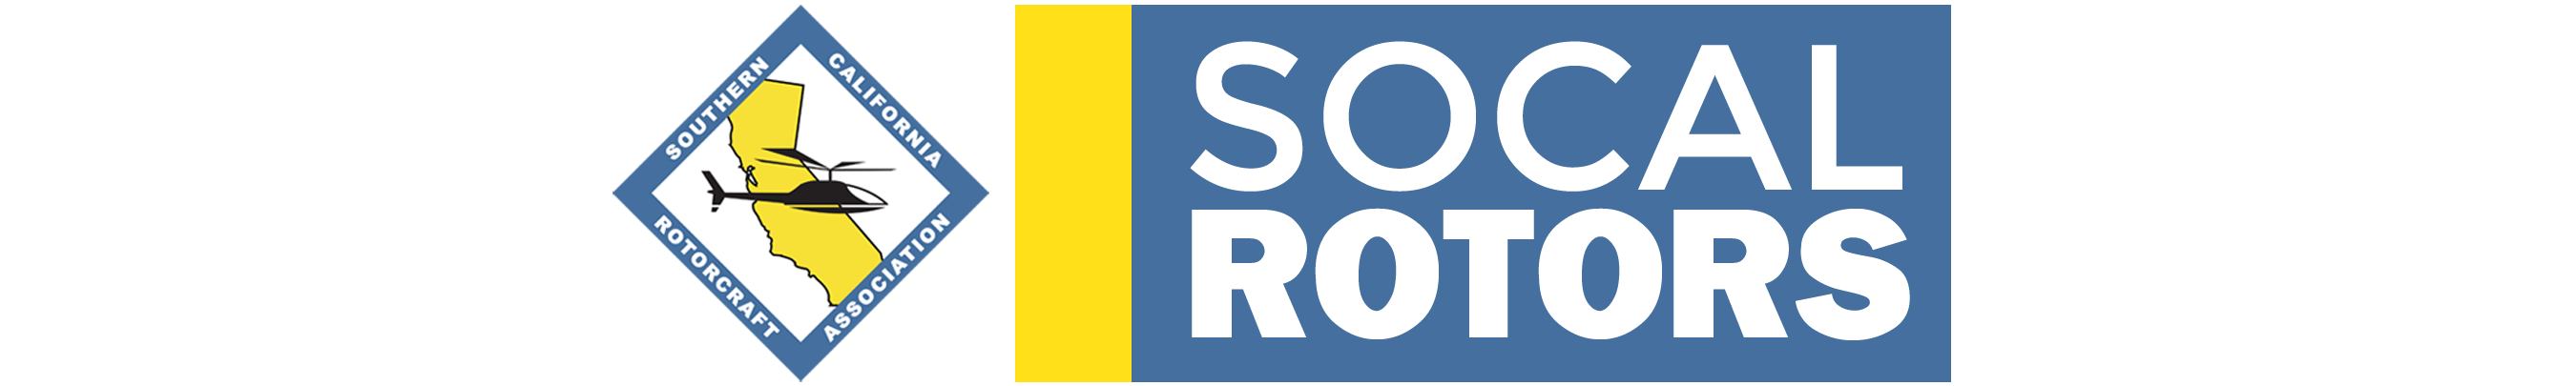 SoCal Rotors